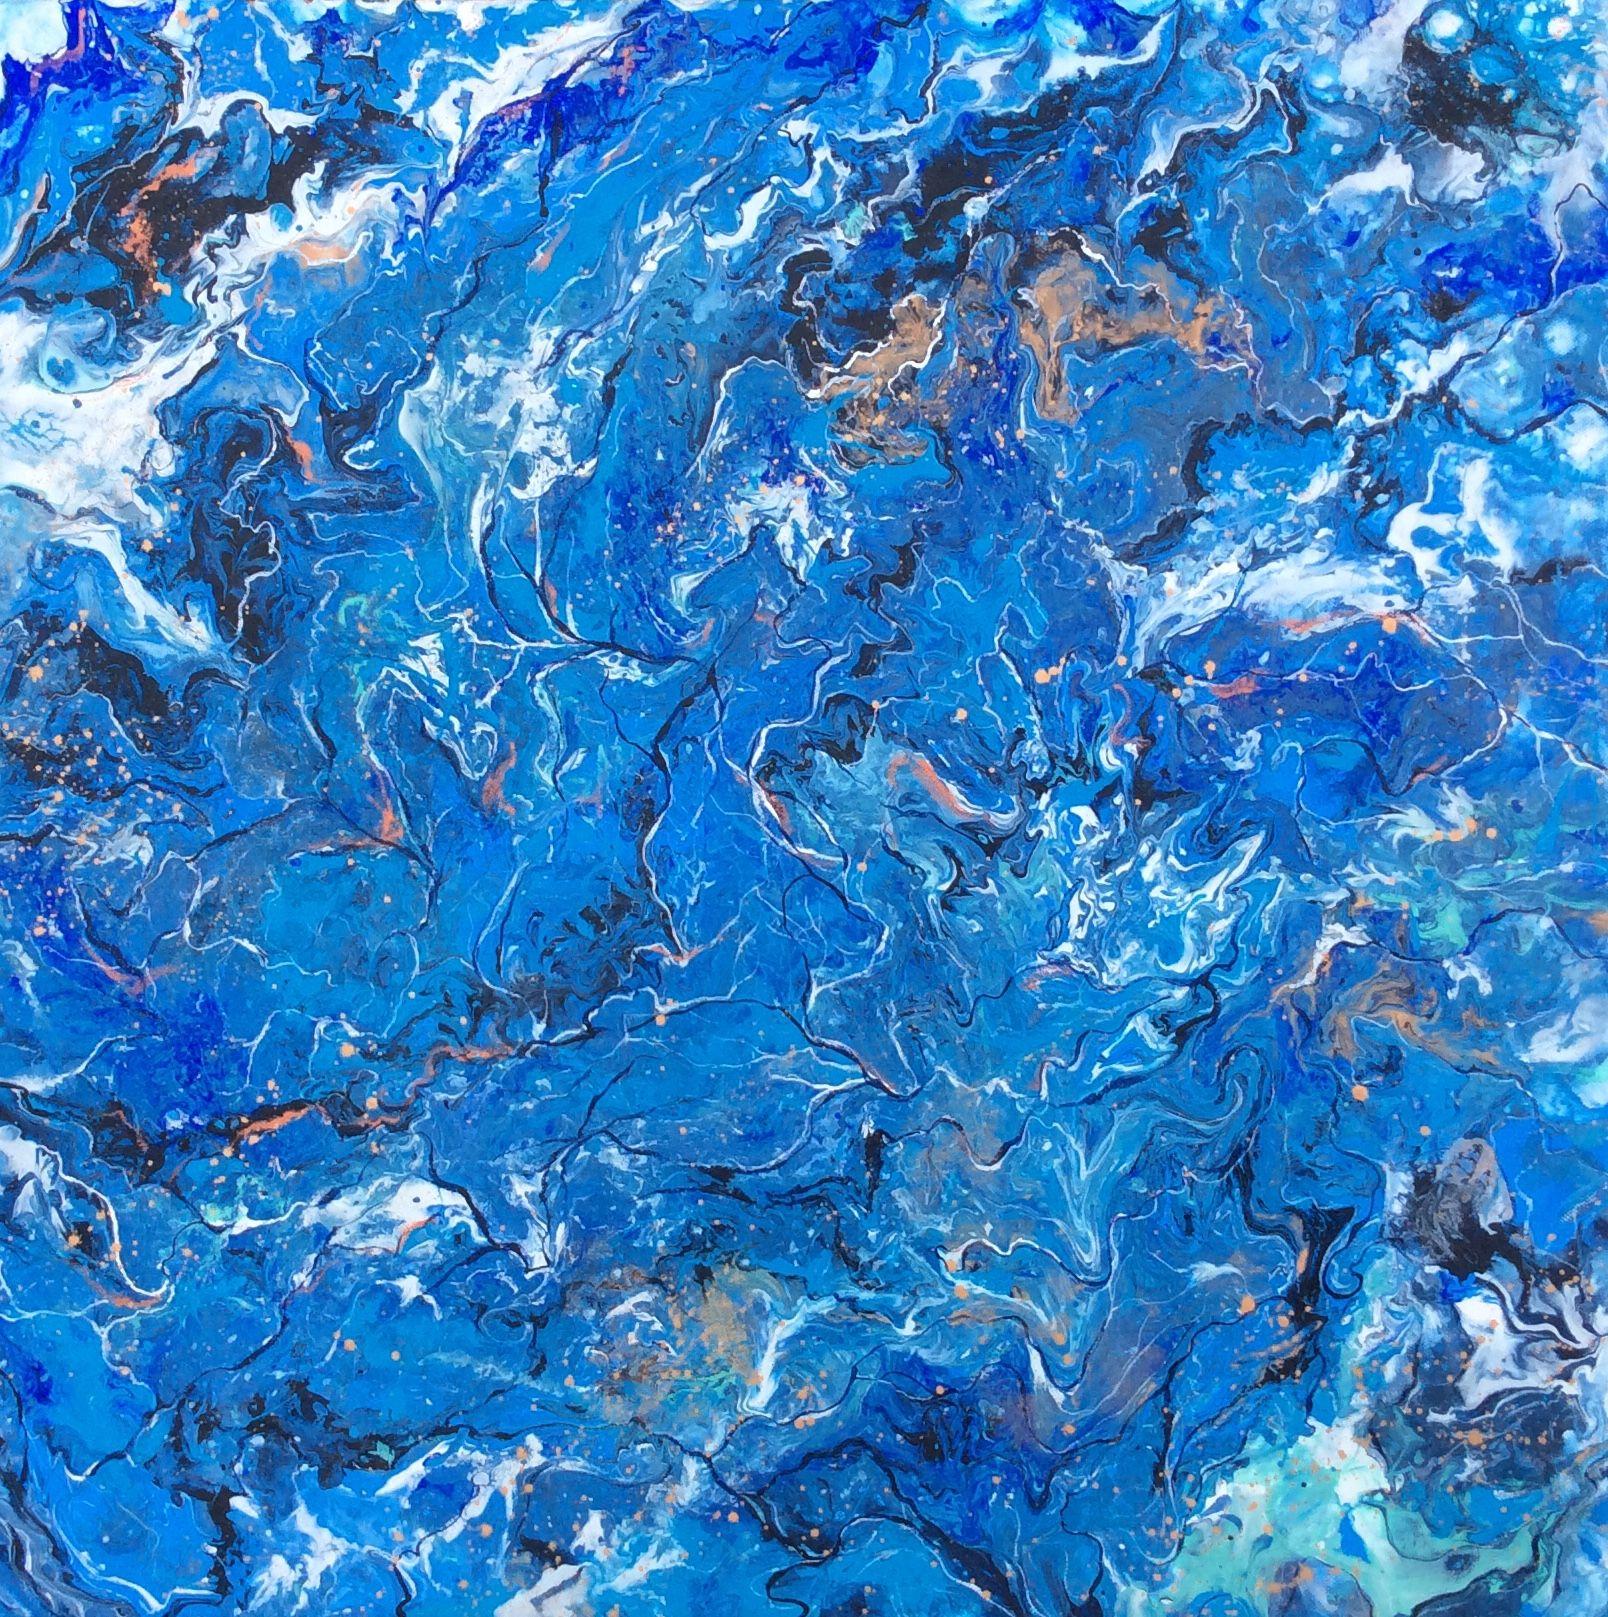 blue ocean abstract art